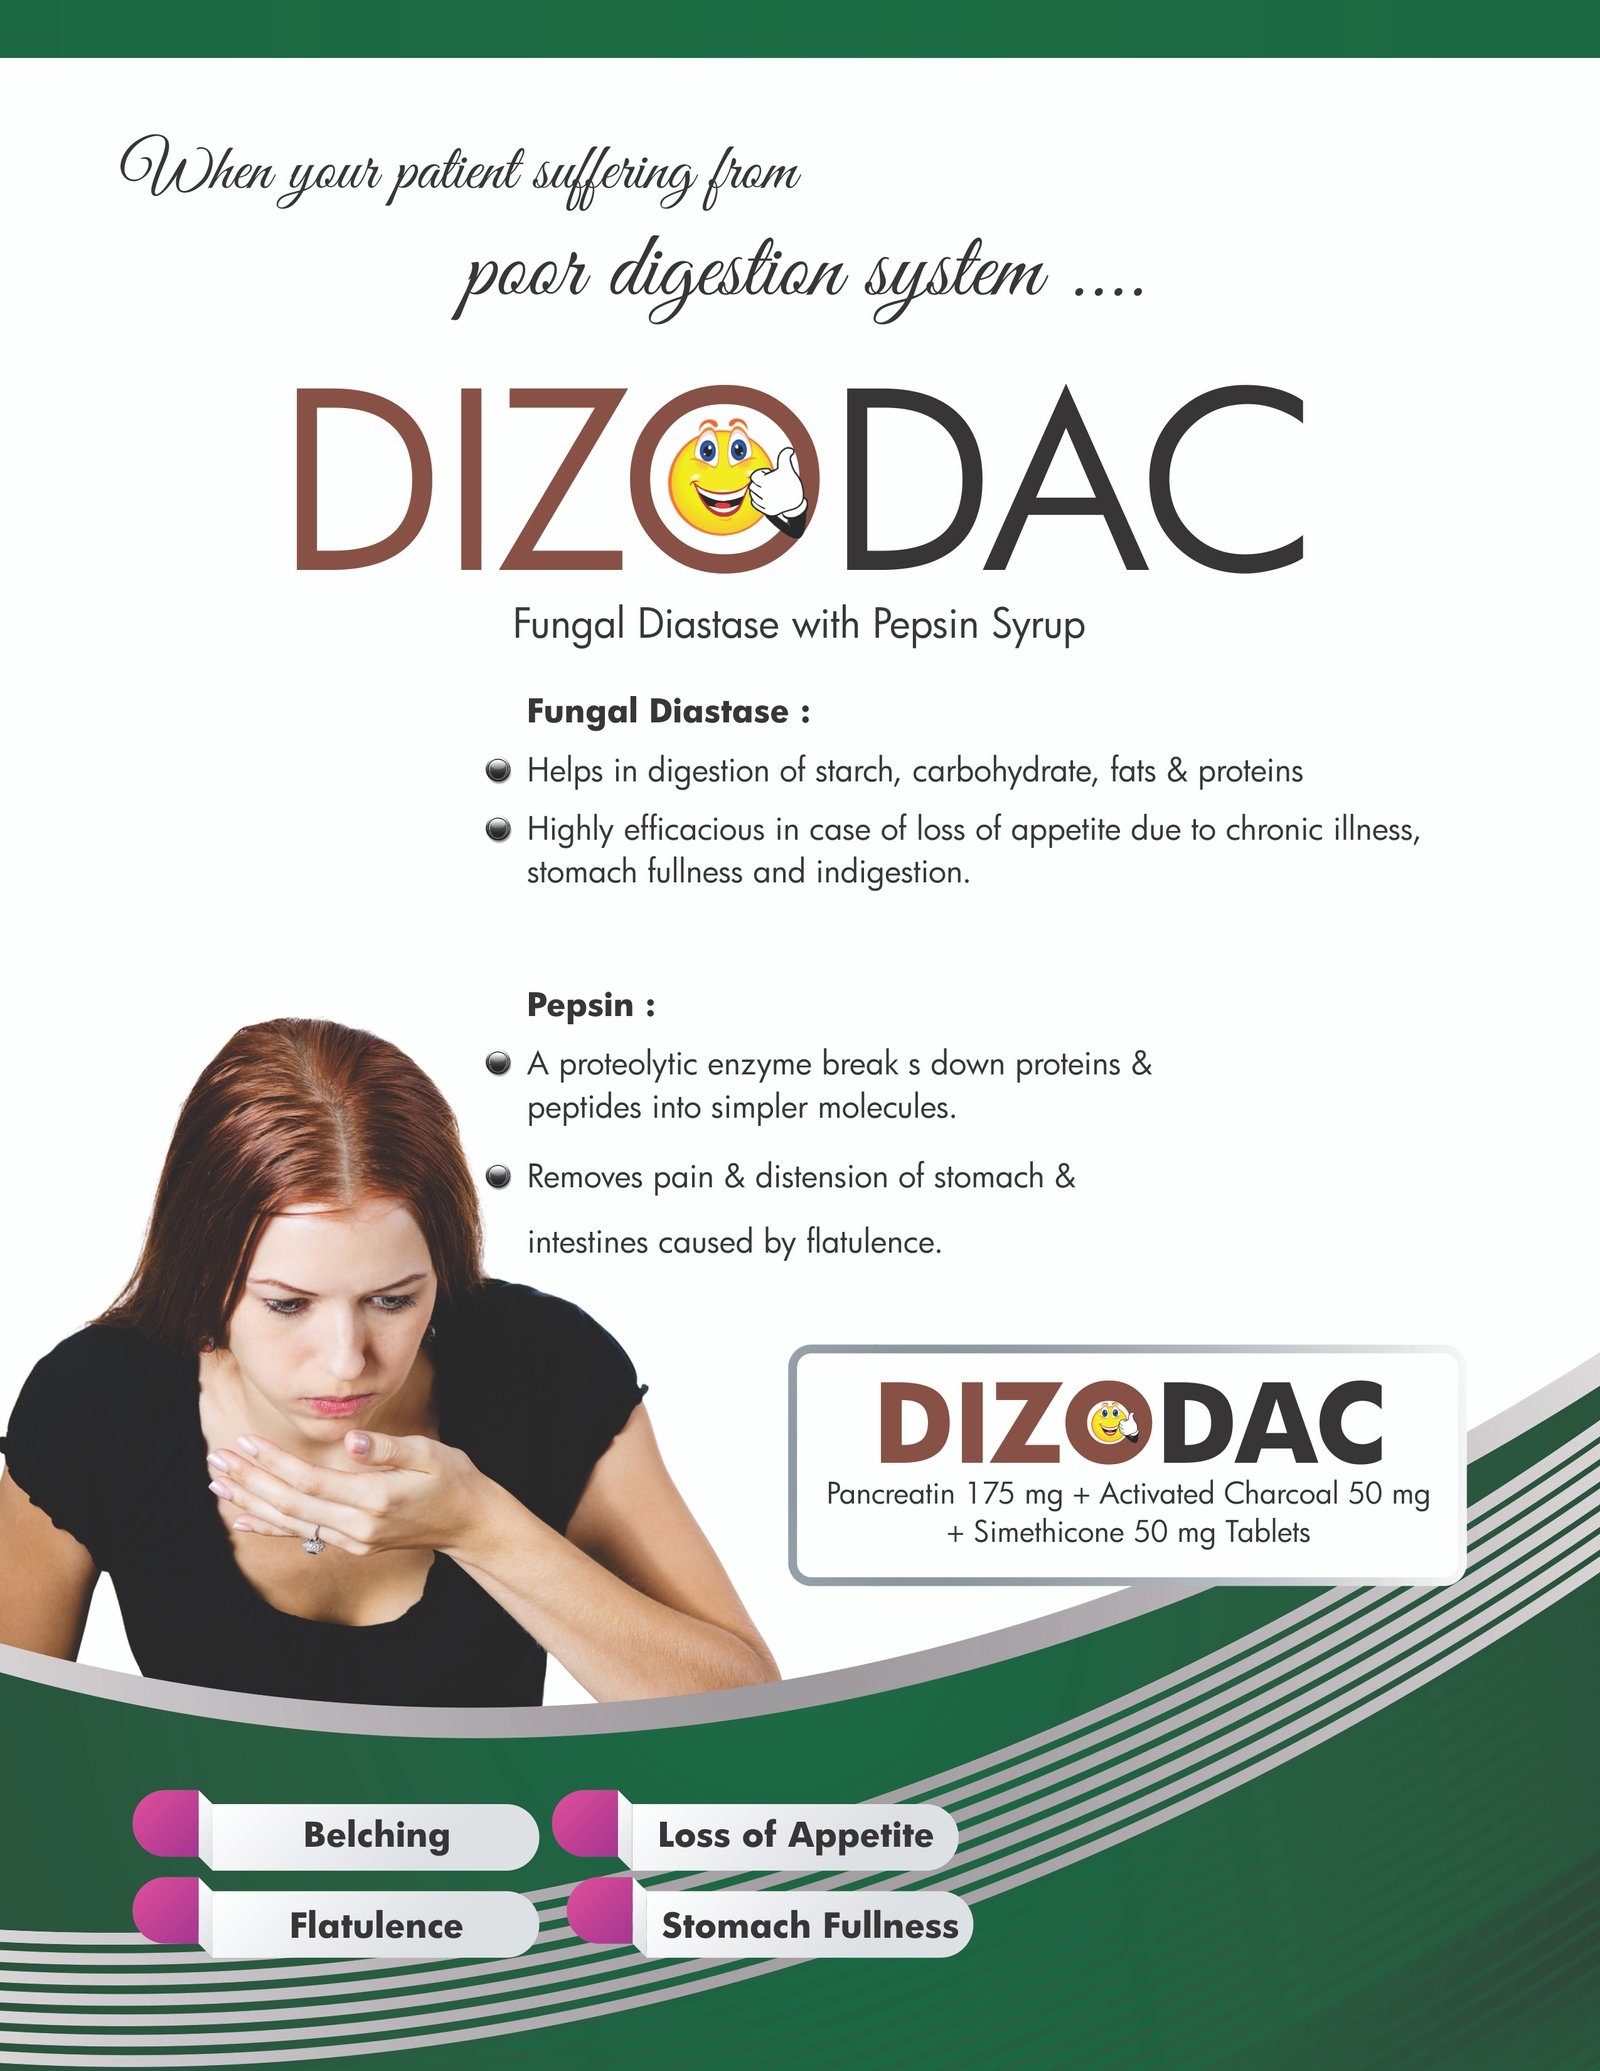 dizodac, dakshpharma, daksh pharmaceuticals panchkula, pcd franchise, pharma franchise